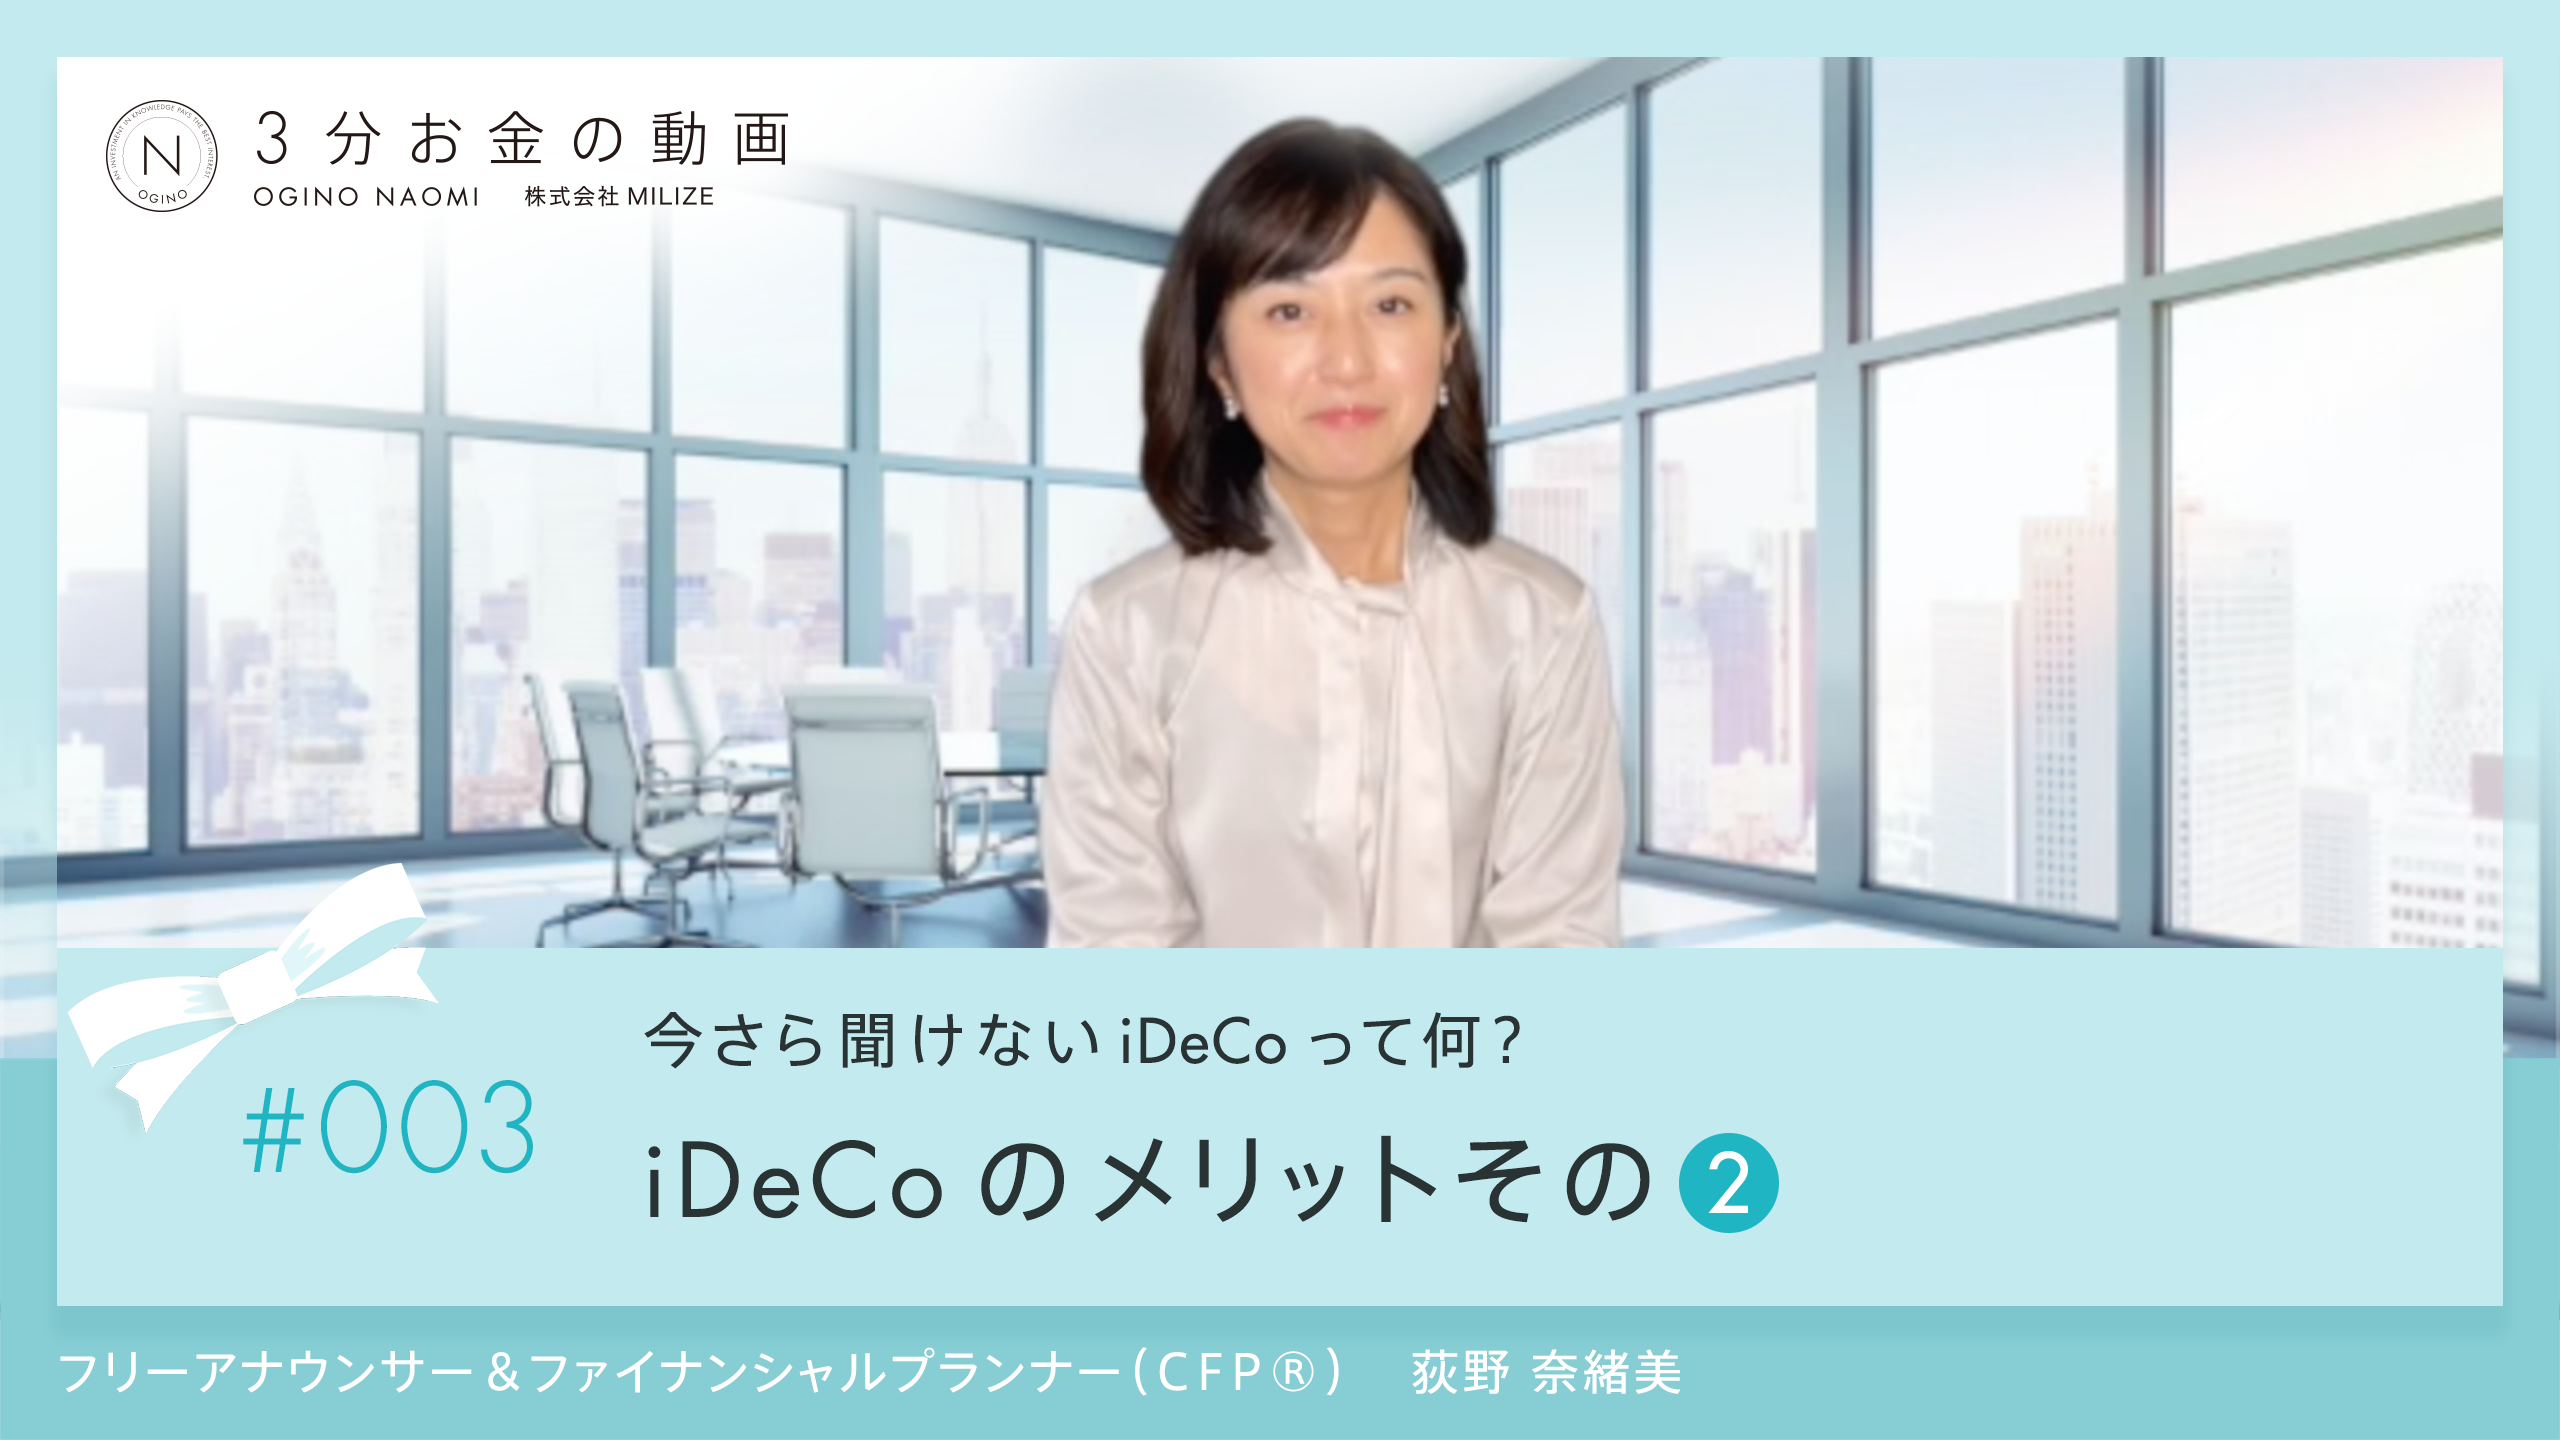 第3回3分お金の動画 iDeco 運用益が非課税<br>〜iDeCoのメリットその２〜